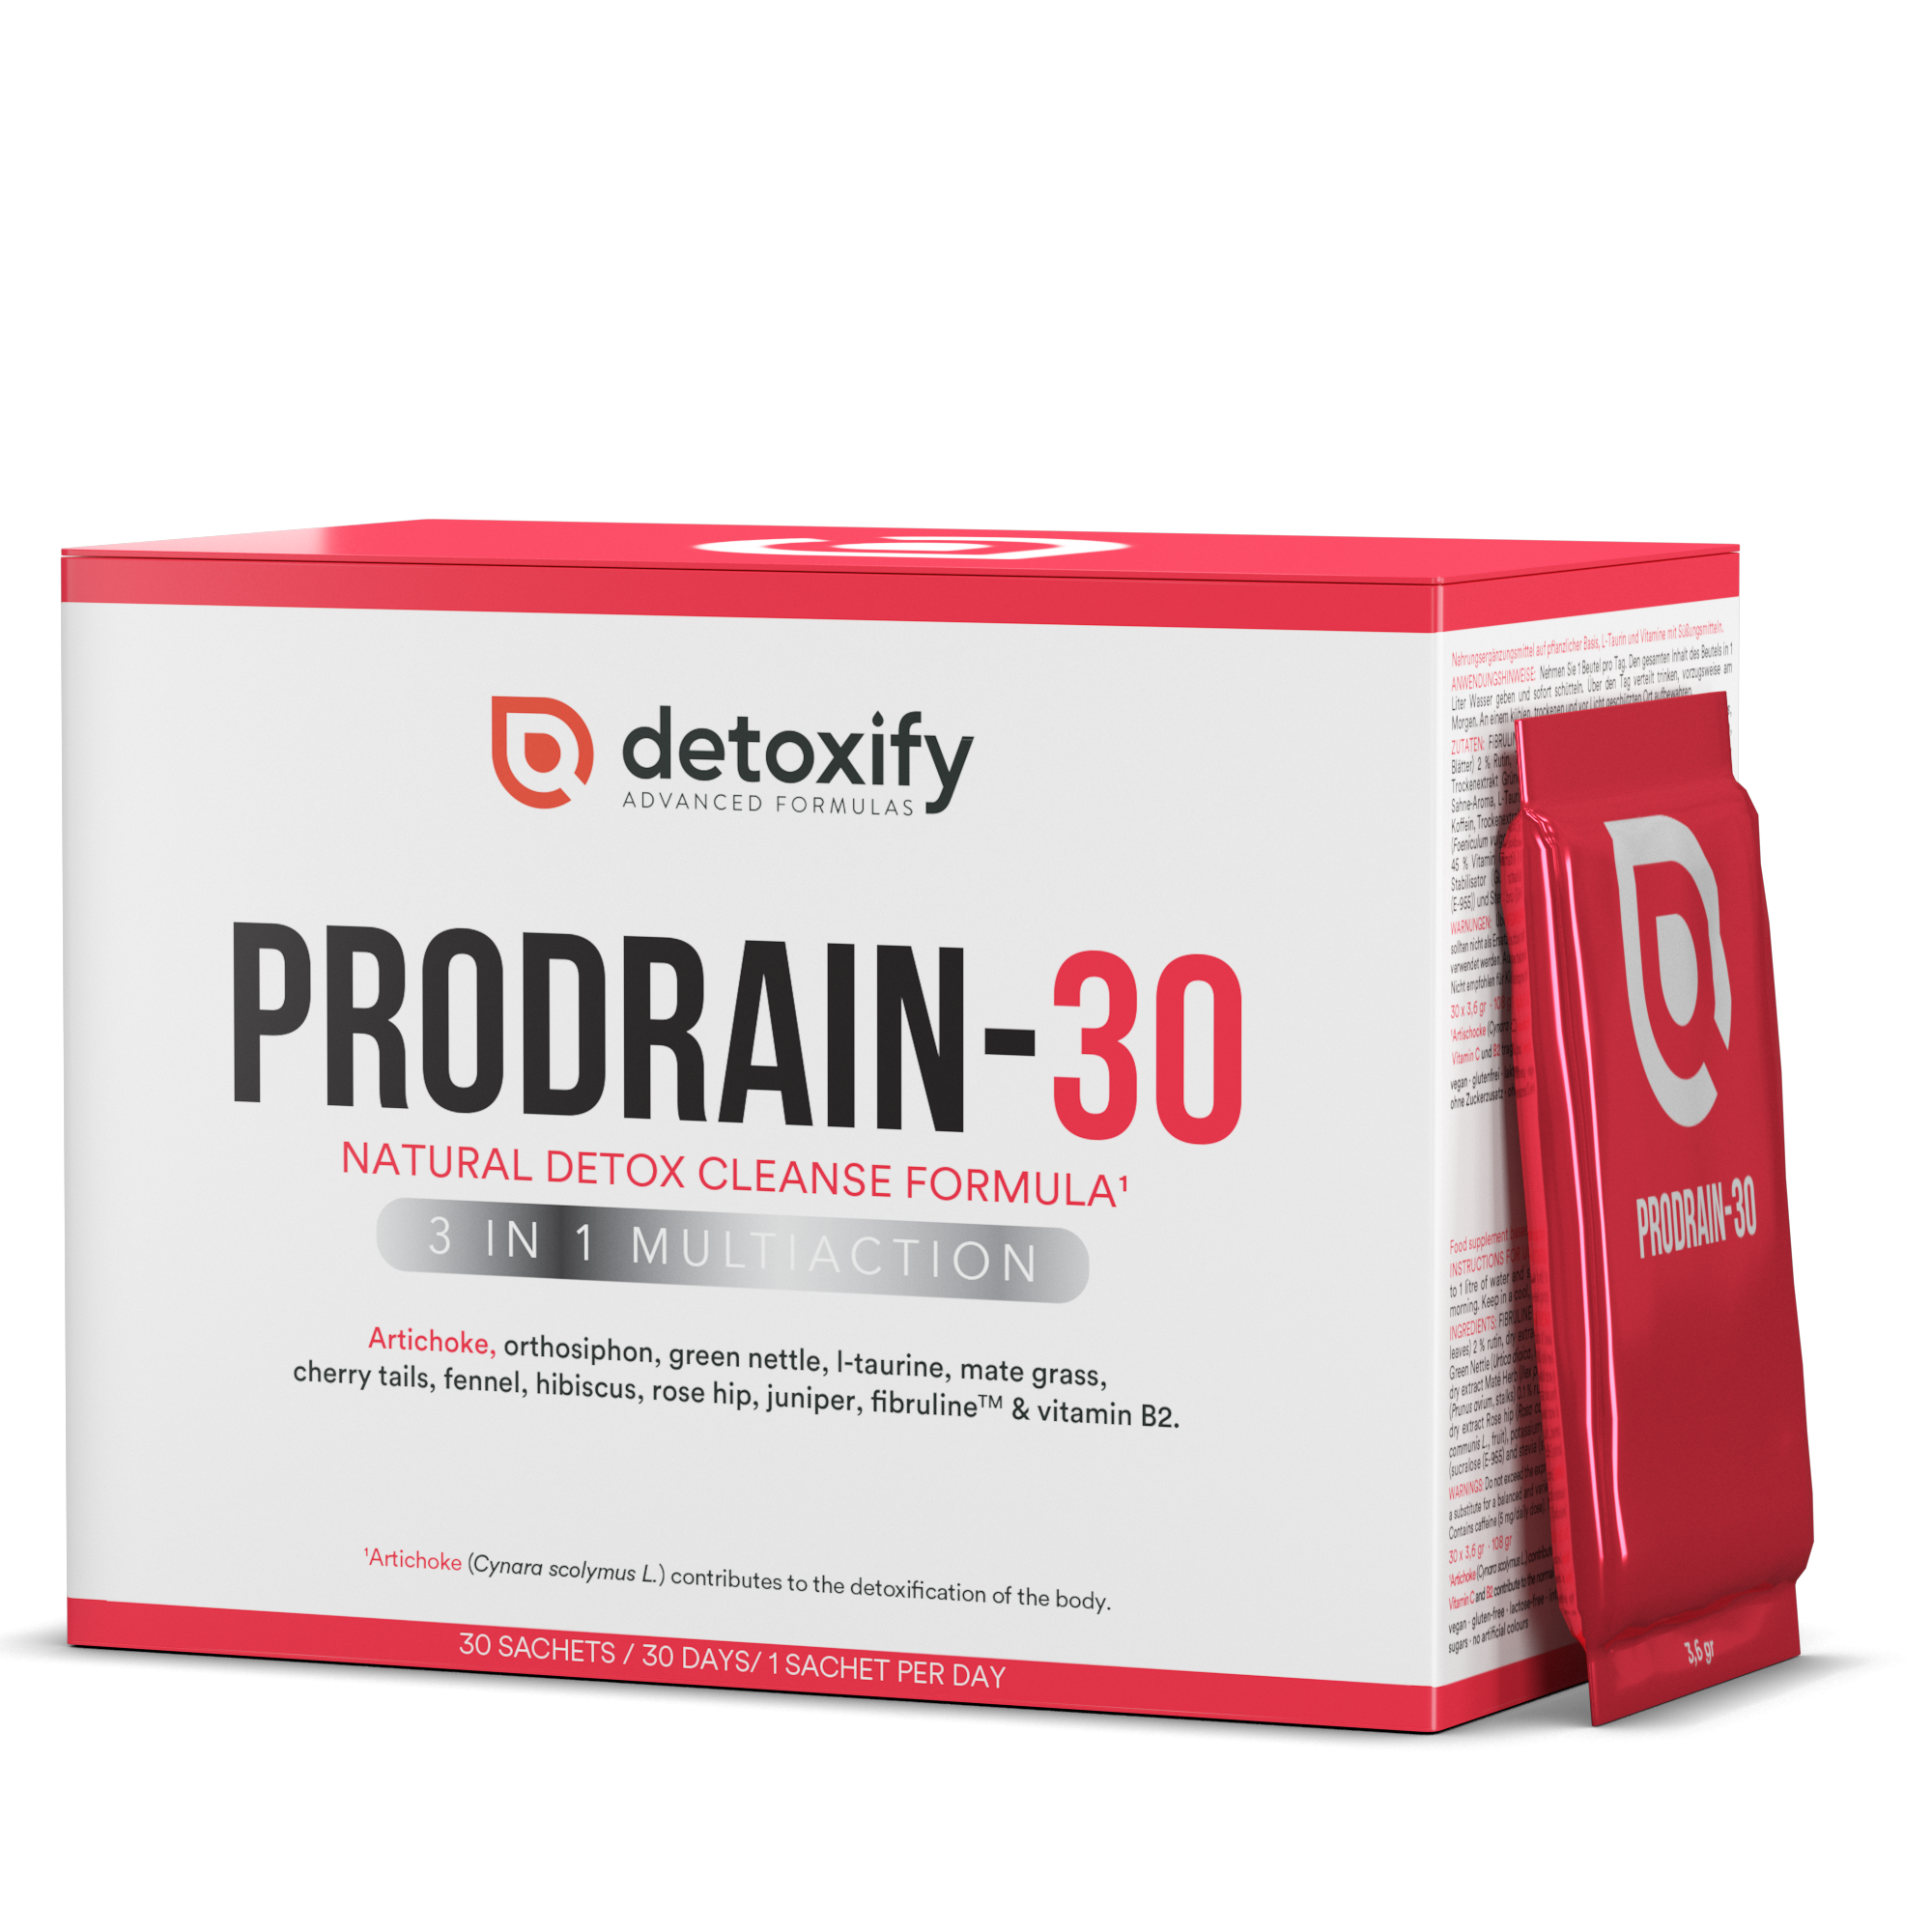 Detoxify® ProDrain-30 | Ayuda a Eliminar la Retención de Líquidos | 30 Días de Tratamiento